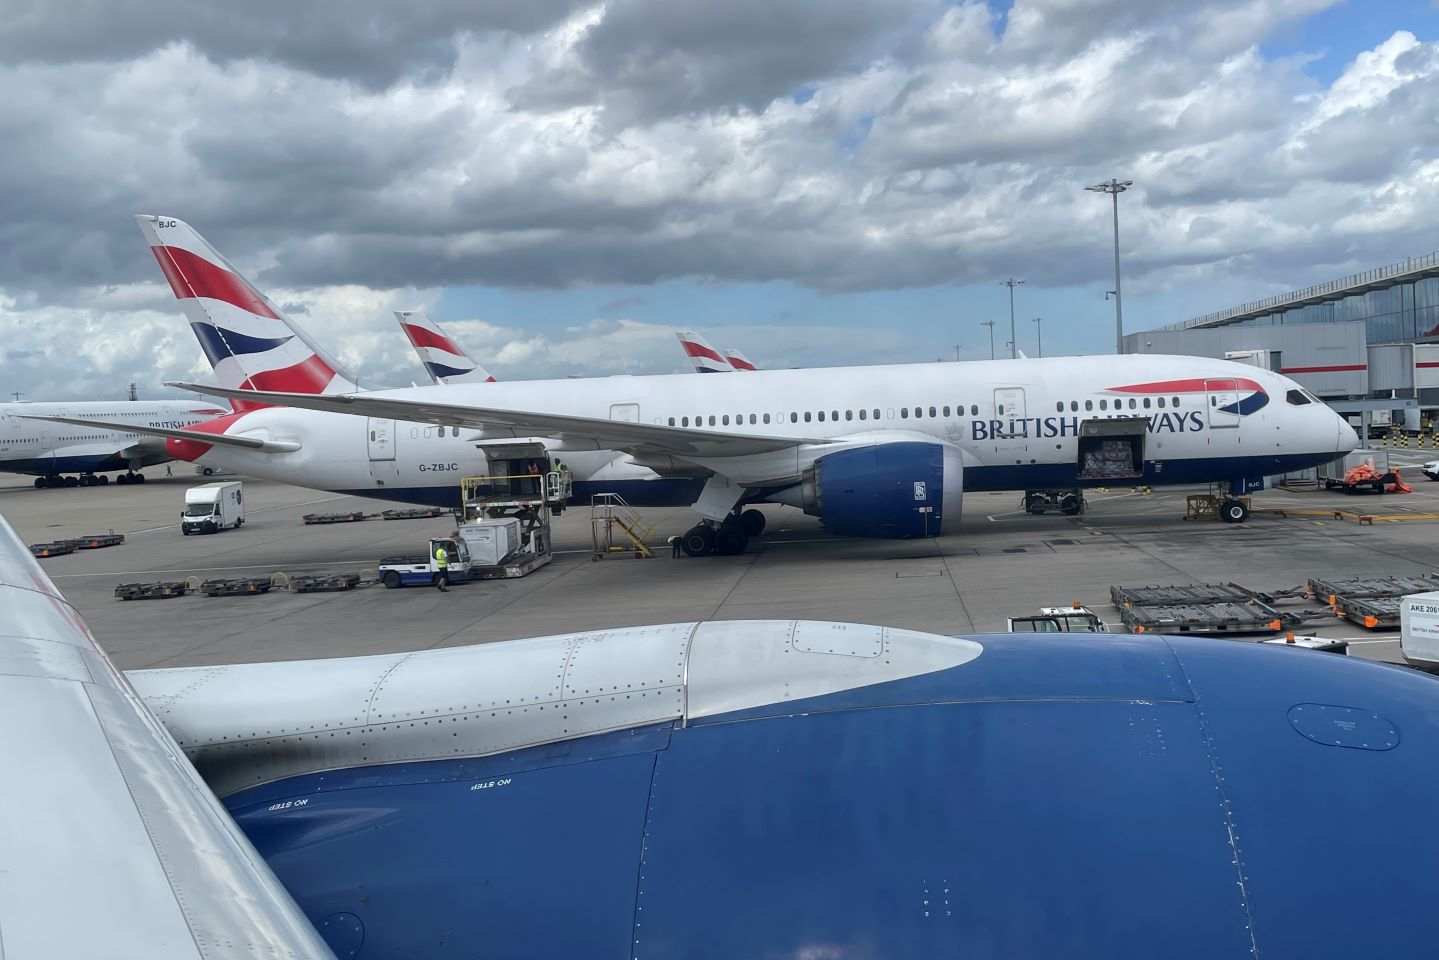 British Airways Planes at London Heathrow Airport